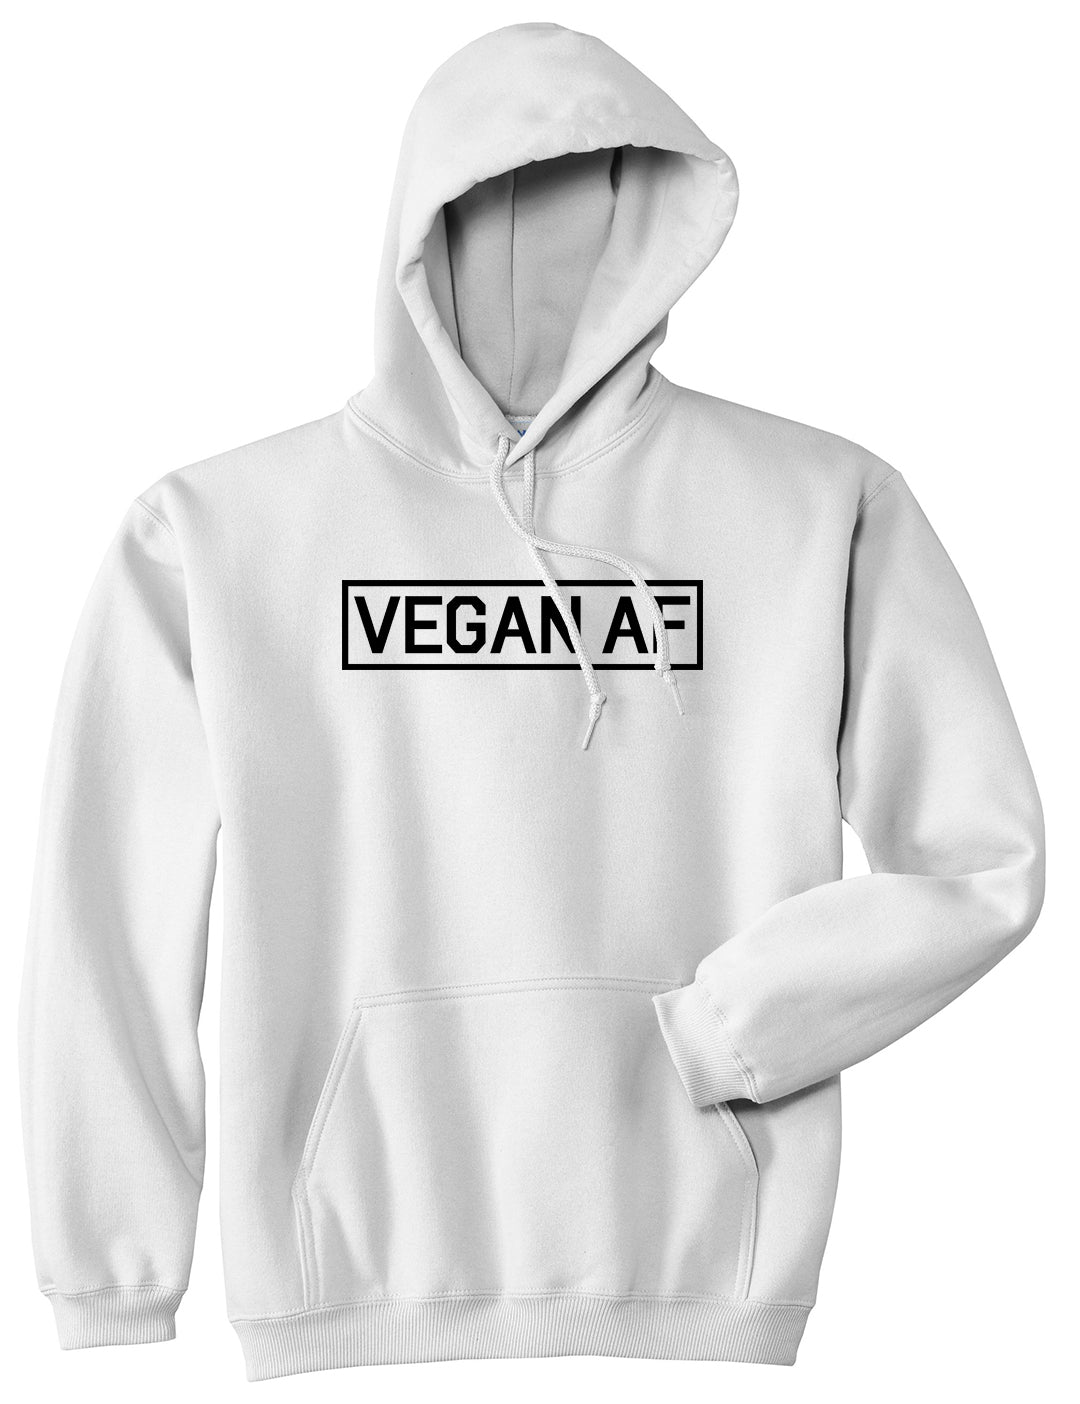 Vegan AF Vegetarian White Pullover Hoodie by Kings Of NY